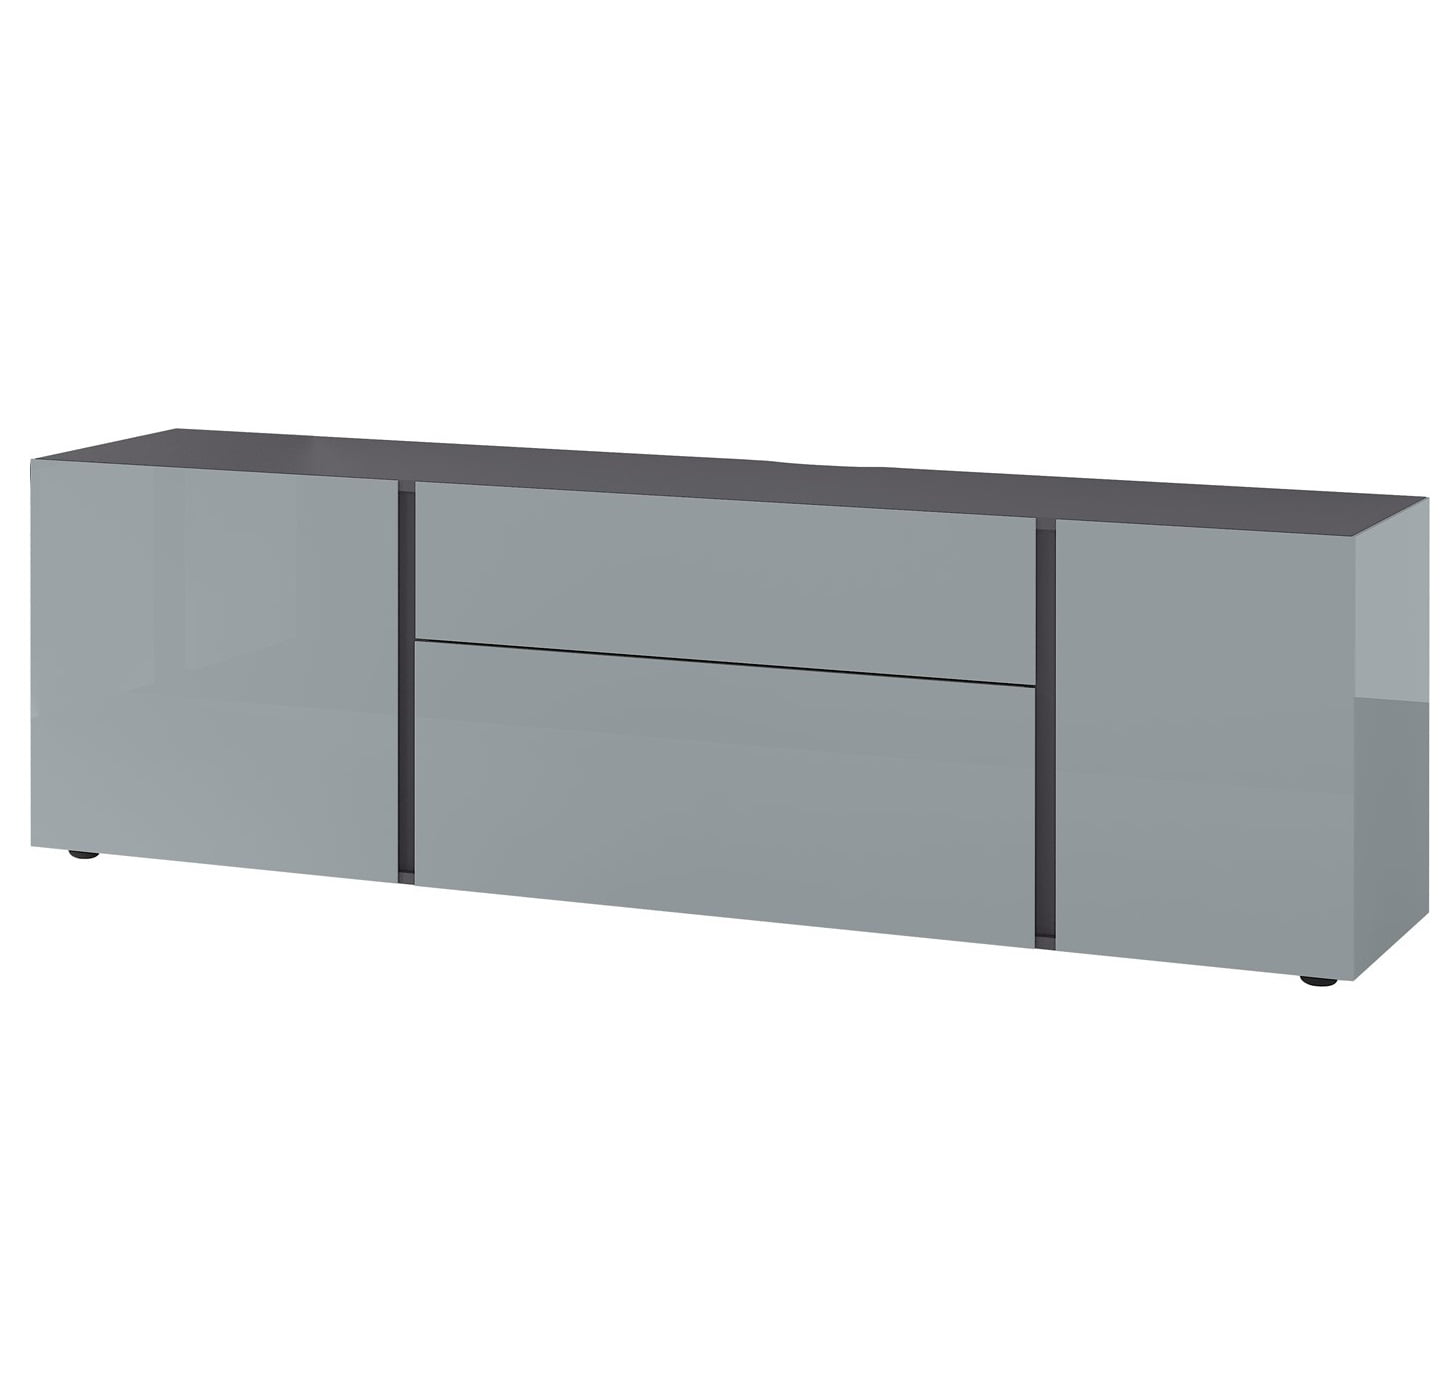 Aanbieding Tv-meubel Mesa 180 cm breed in grafiet met zilvergrijs - 8785269137651